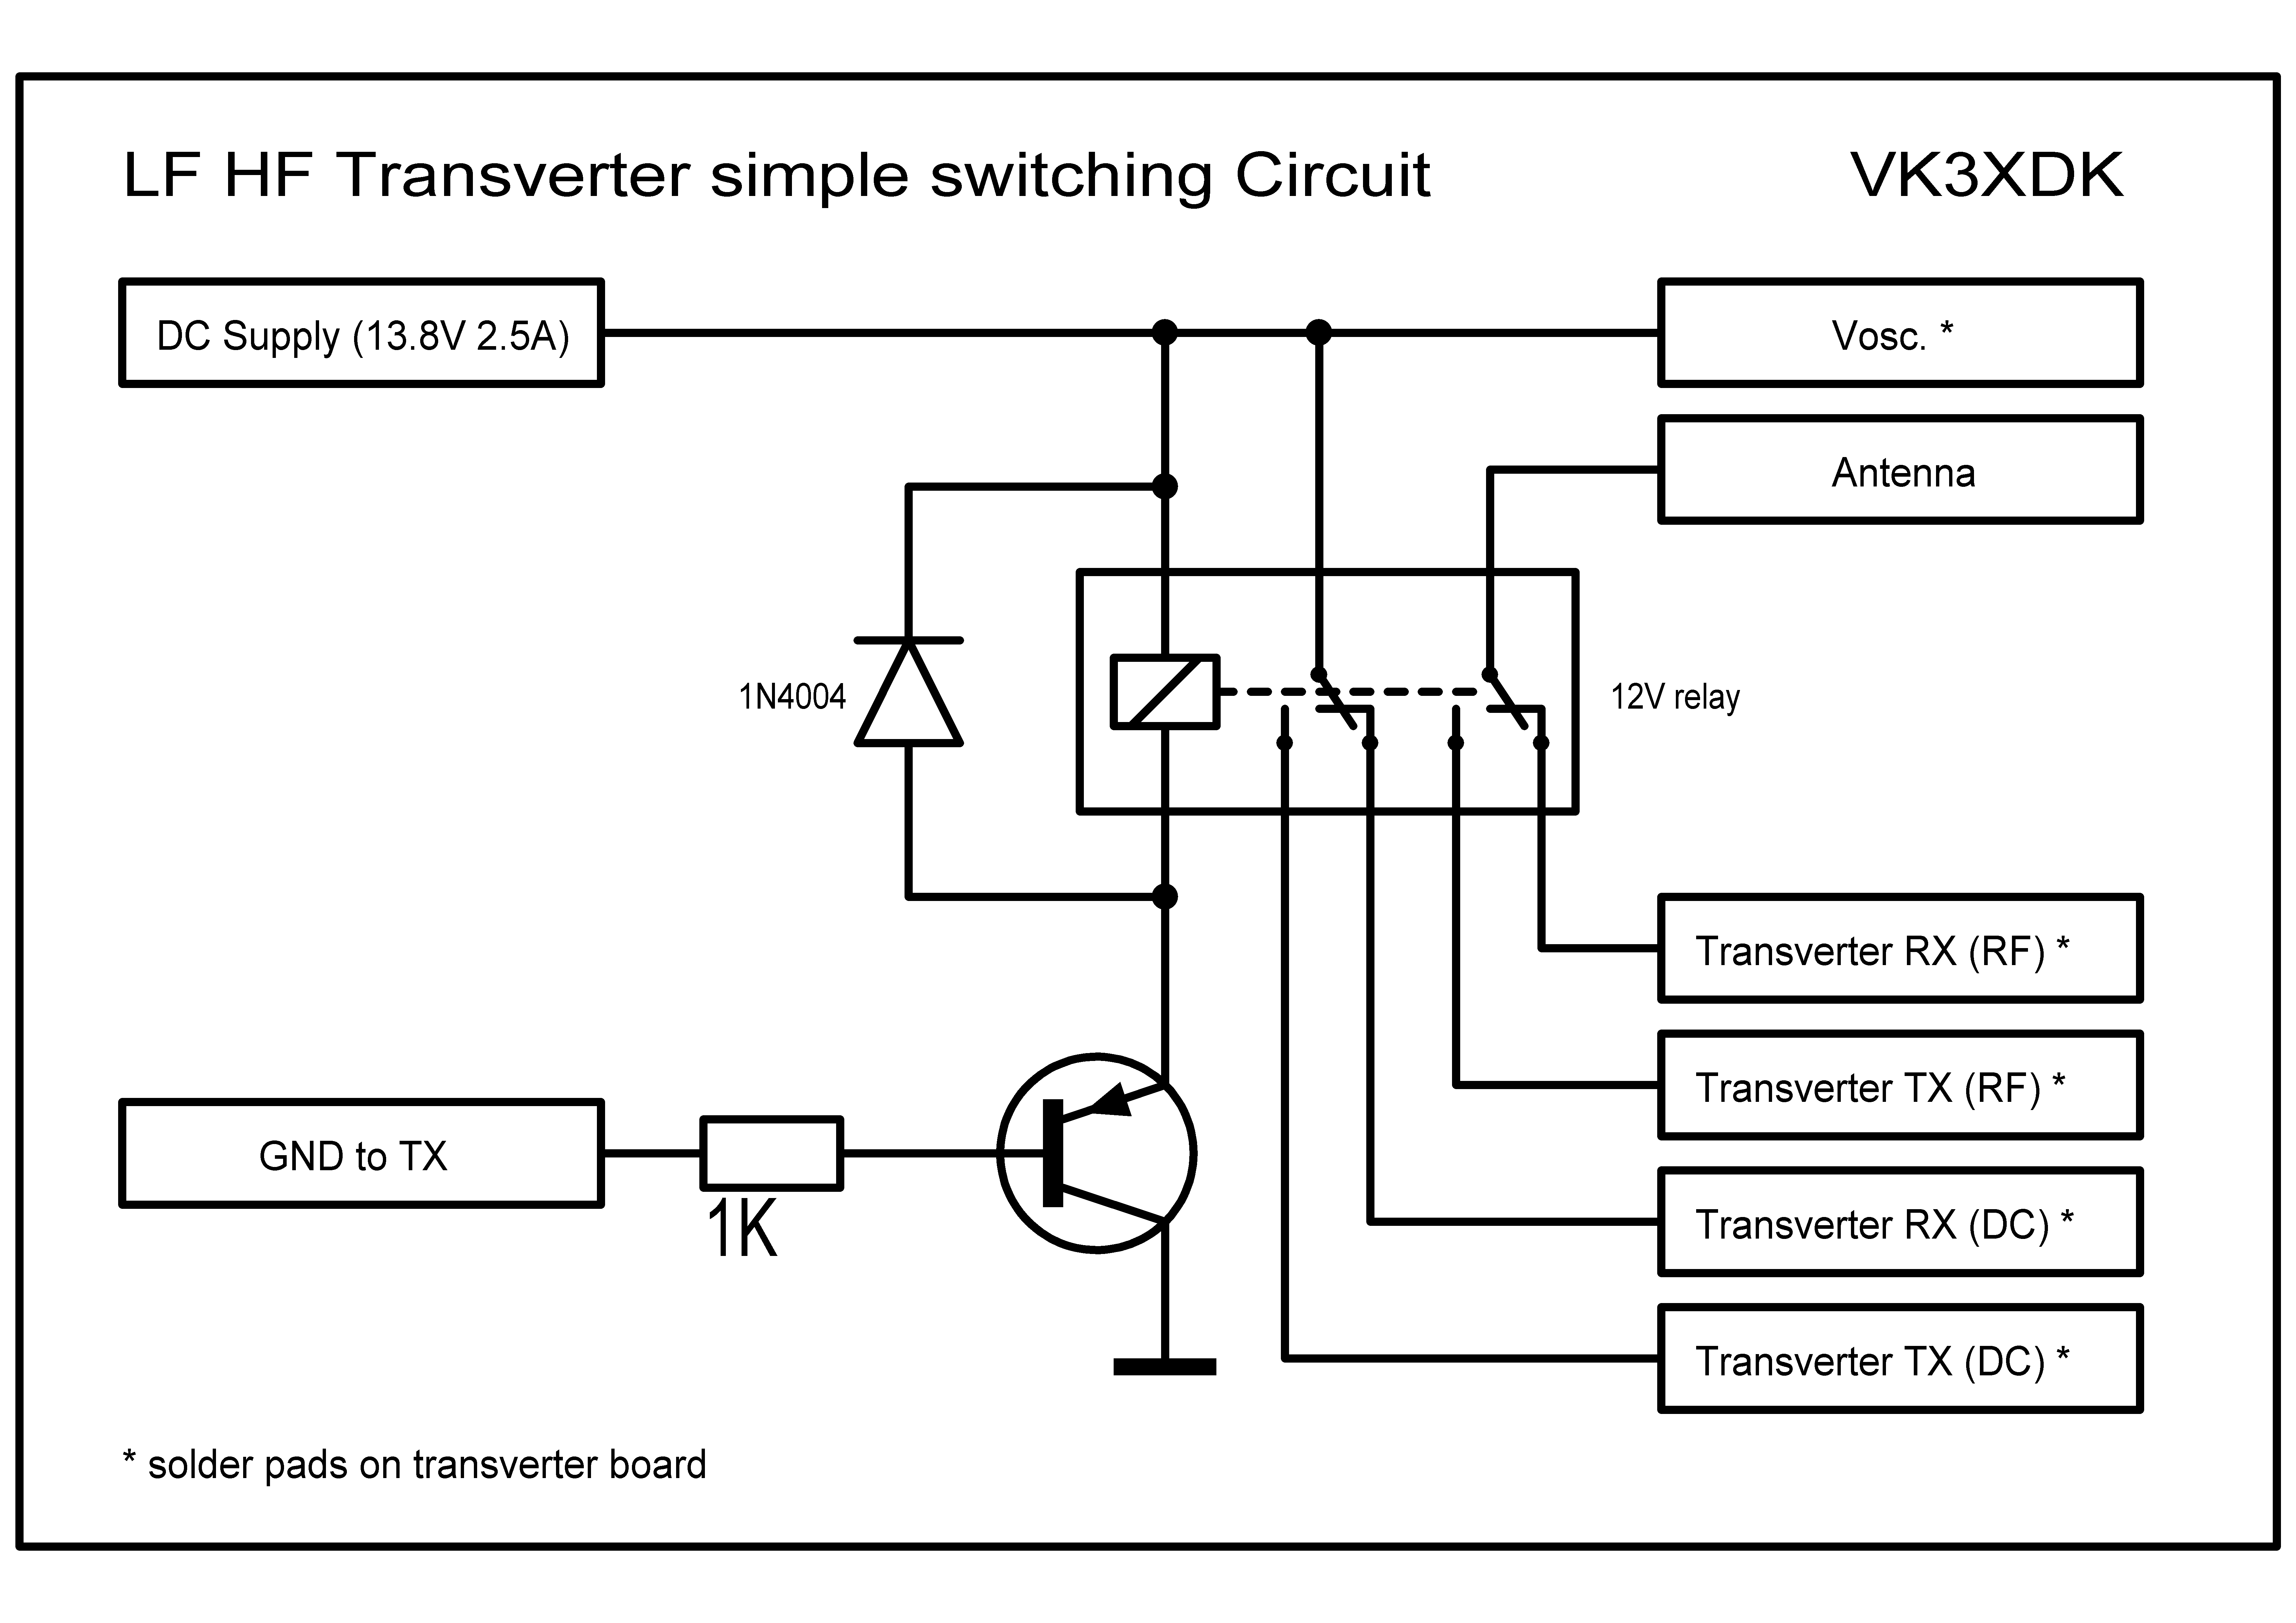 LF HF transverter simple switching.TIF